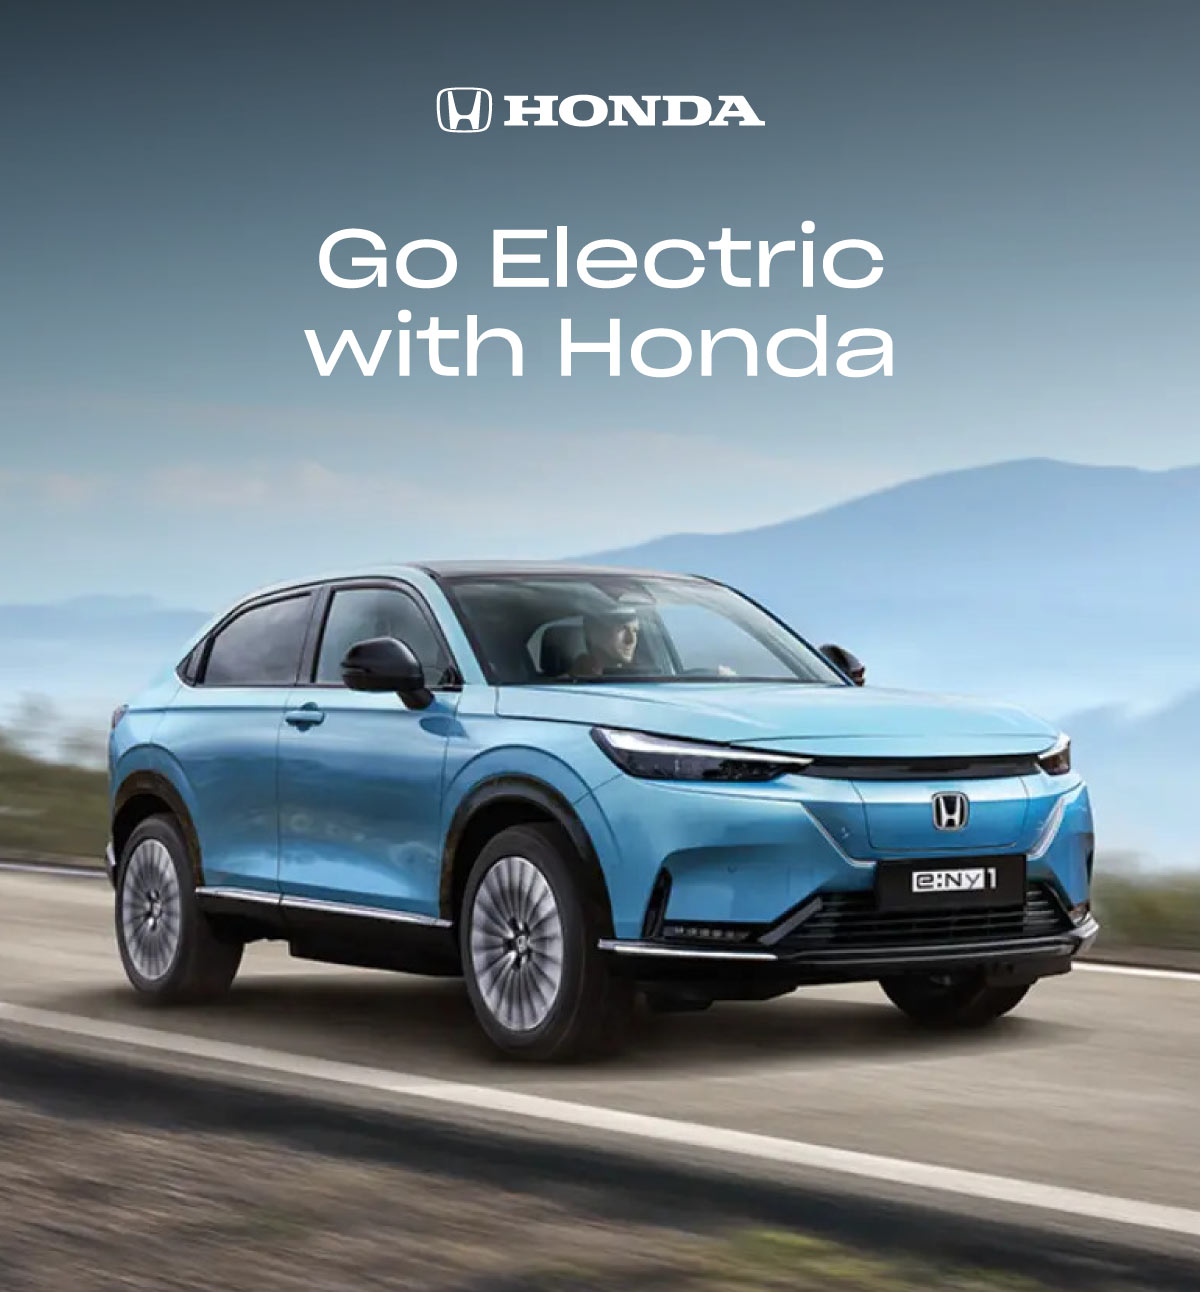 Honda Electric Go